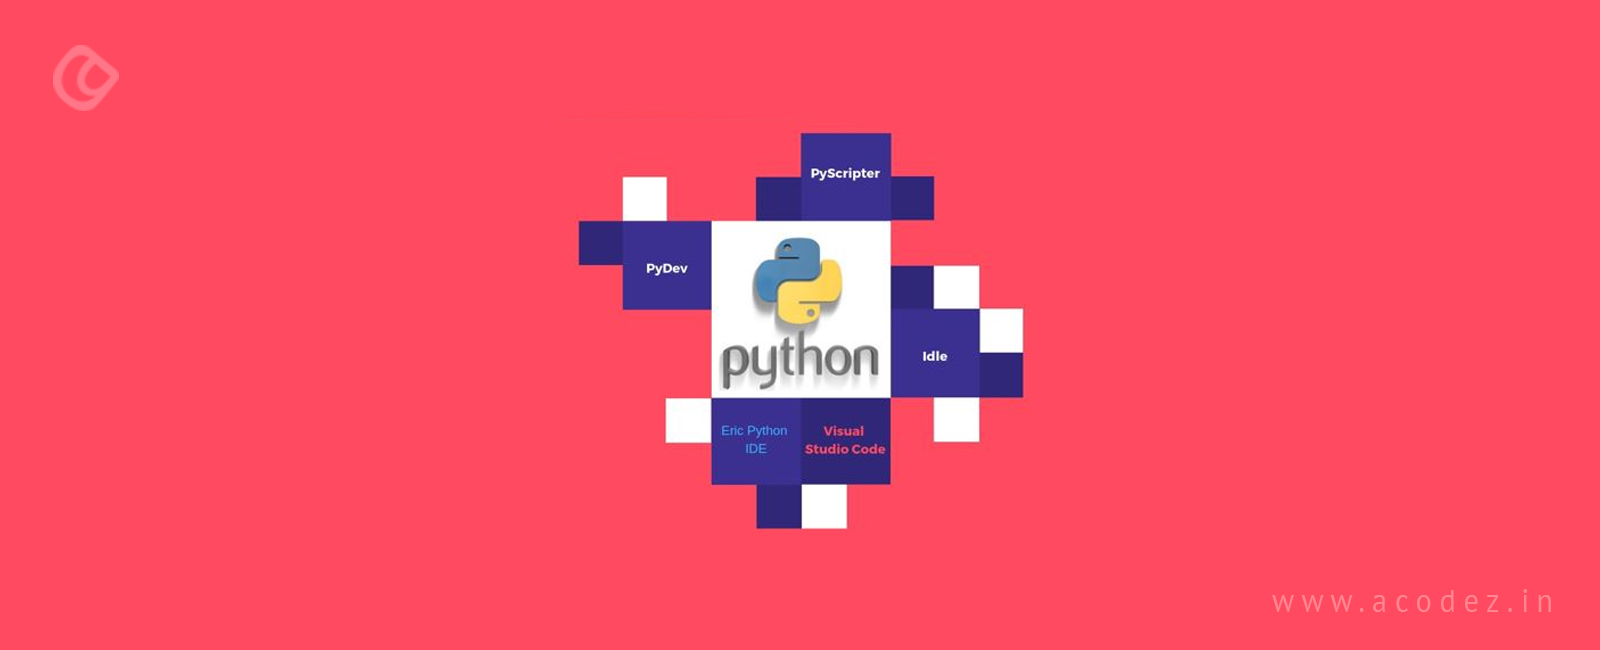 best python ide windows 2015